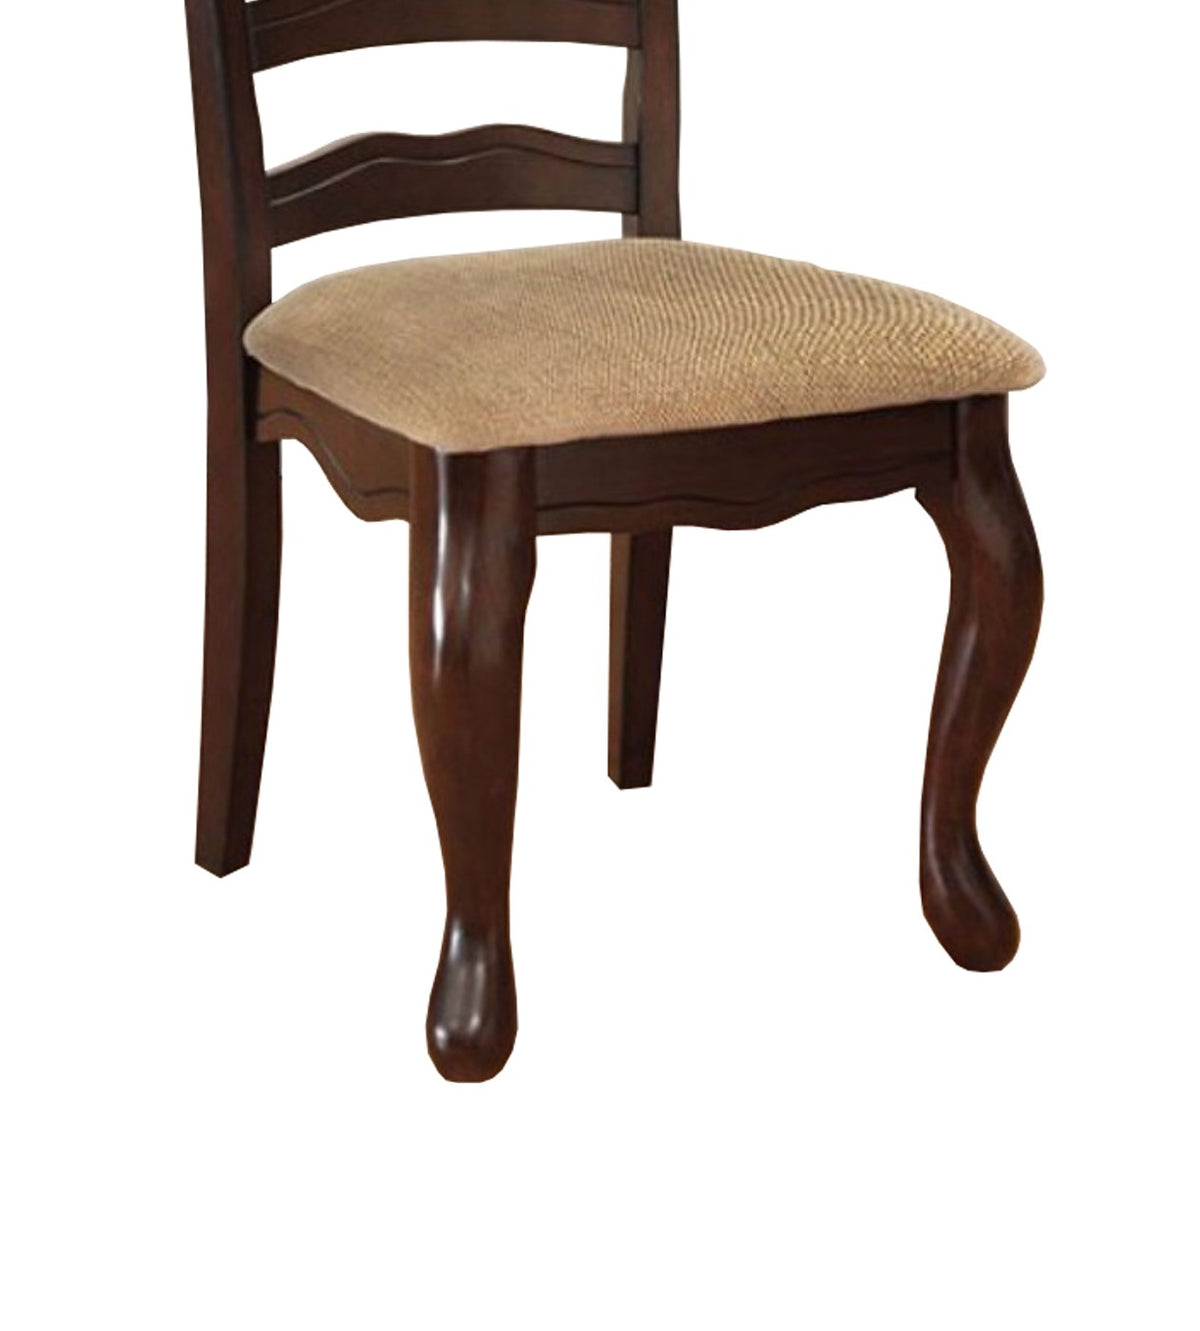 BM131180 Townsville Cottage Side Chair, Dark Walnut Finish, Set Of 2